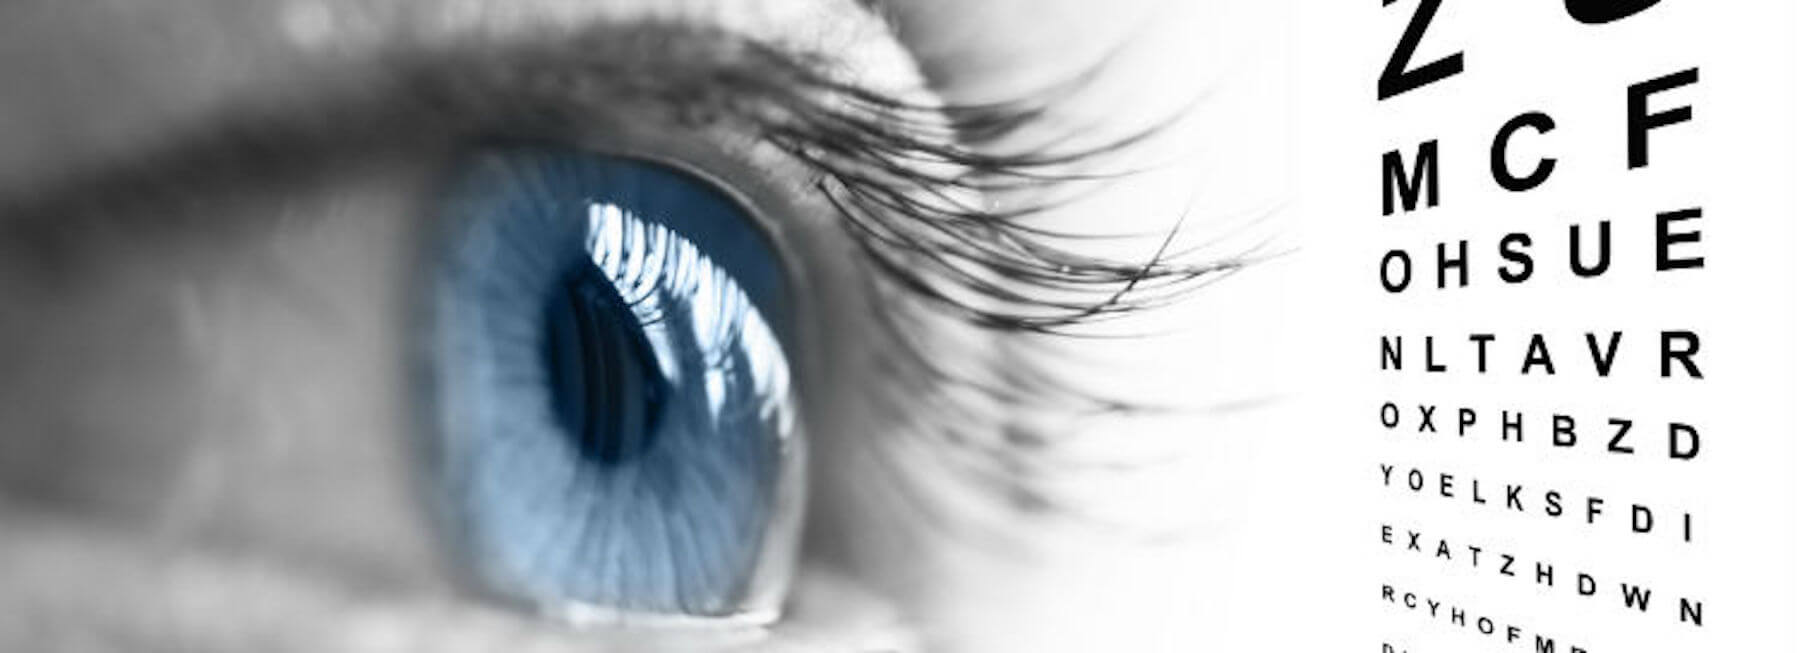 Examens de la vue, examens des yeux et optométristes – IRIS Canada